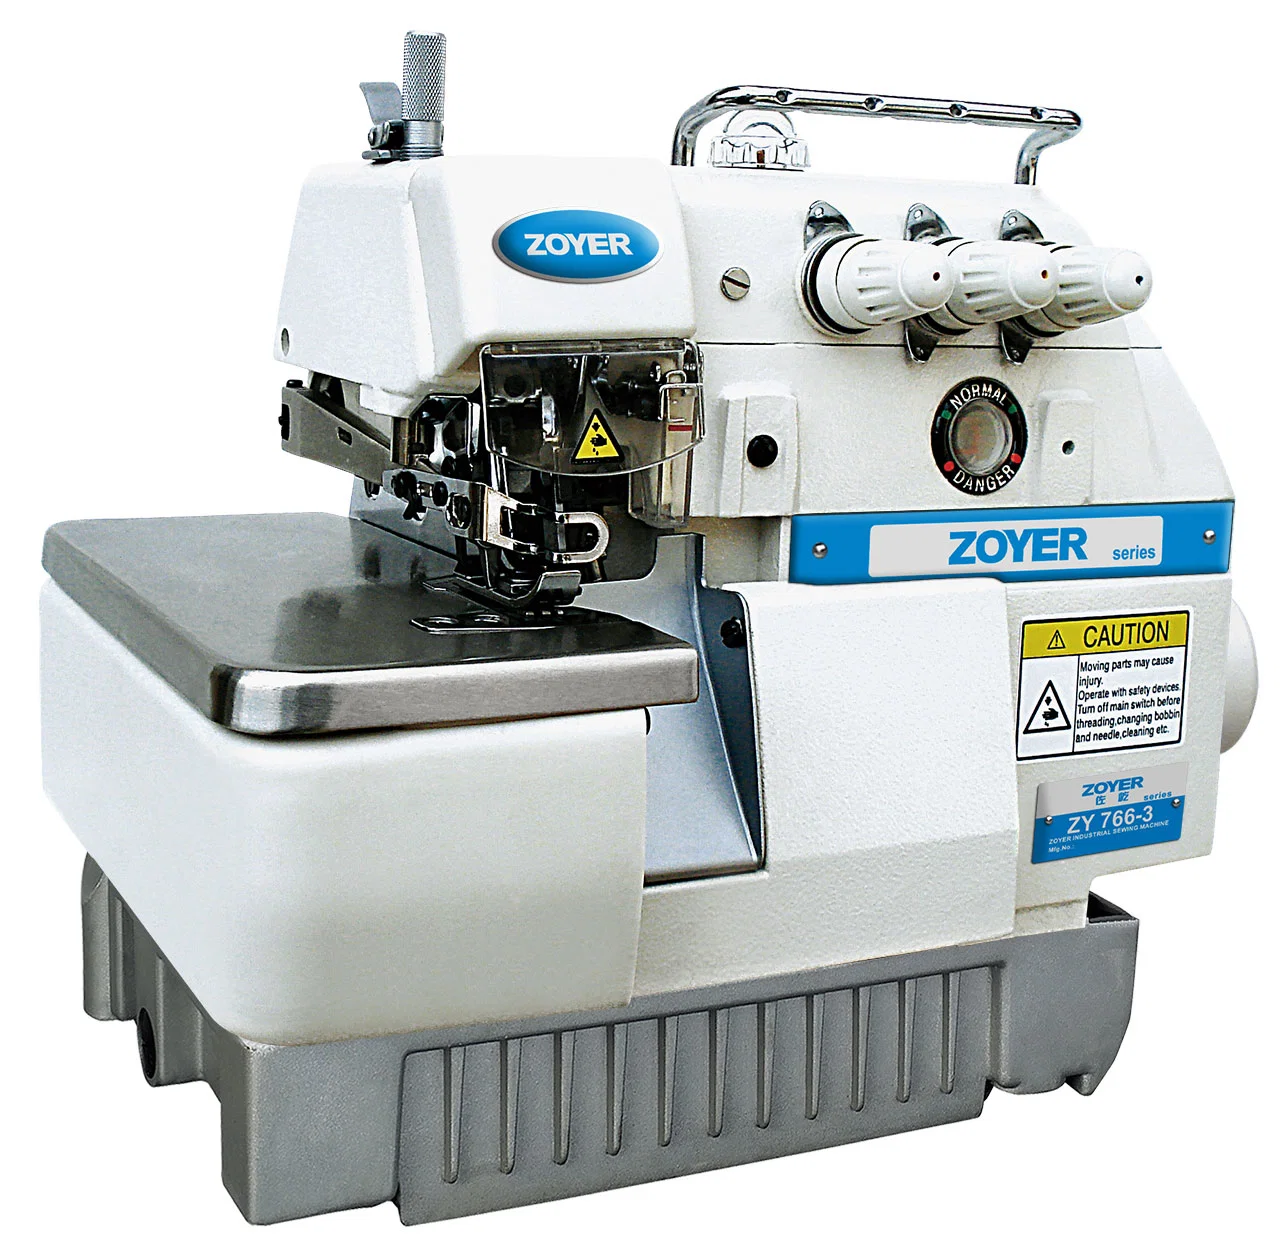 Zy766-3 Zoyer 3 hilos de alta velocidad Super Overlock industriales máquina de coser para prenda